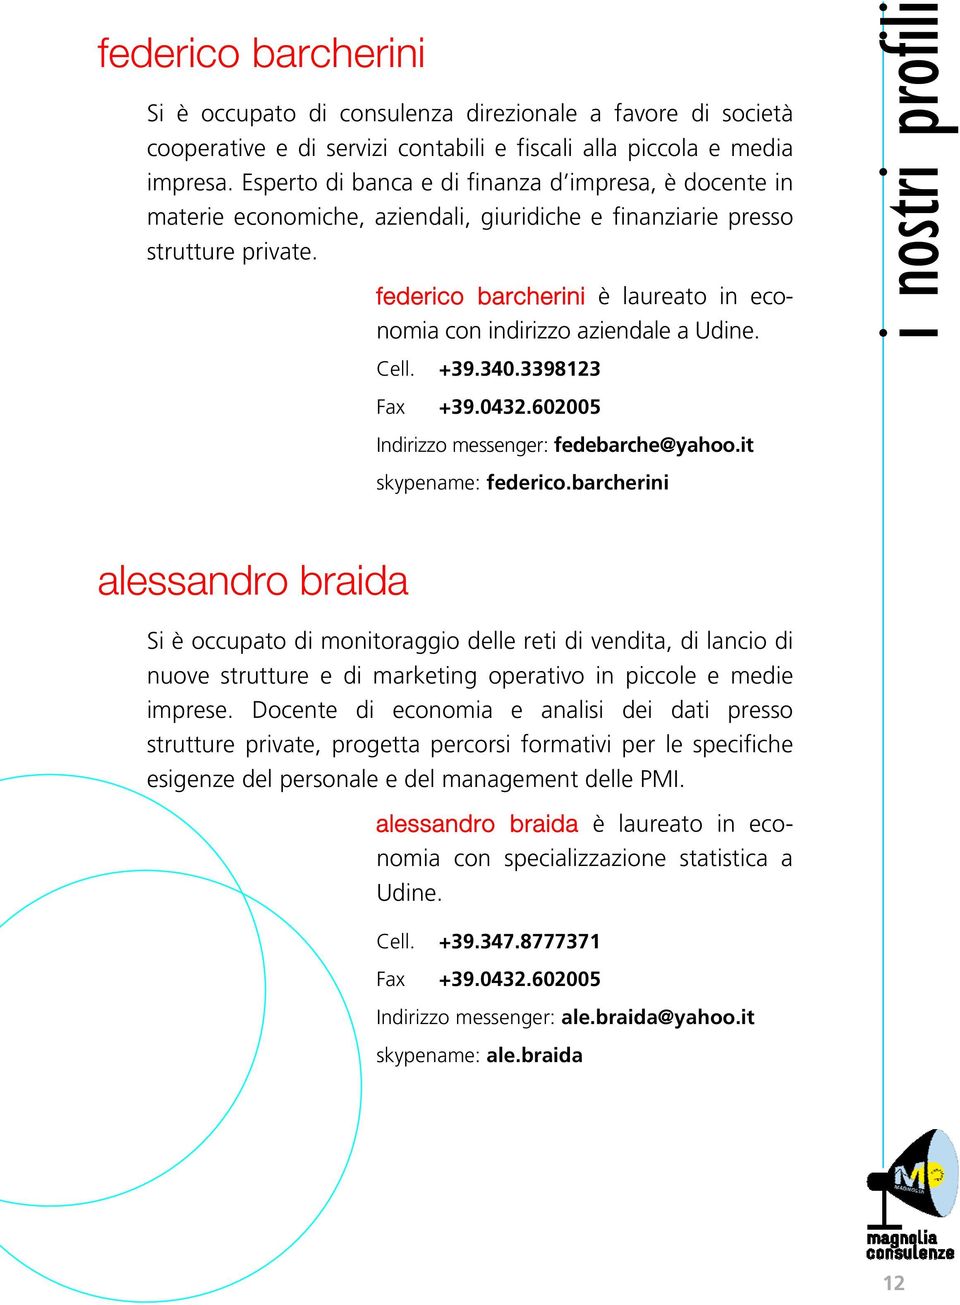 federico barcherini è laureato in economia con indirizzo aziendale a Udine. Cell. +39.340.3398123 Fax +39.0432.602005 Indirizzo messenger: fedebarche@yahoo.it skypename: federico.